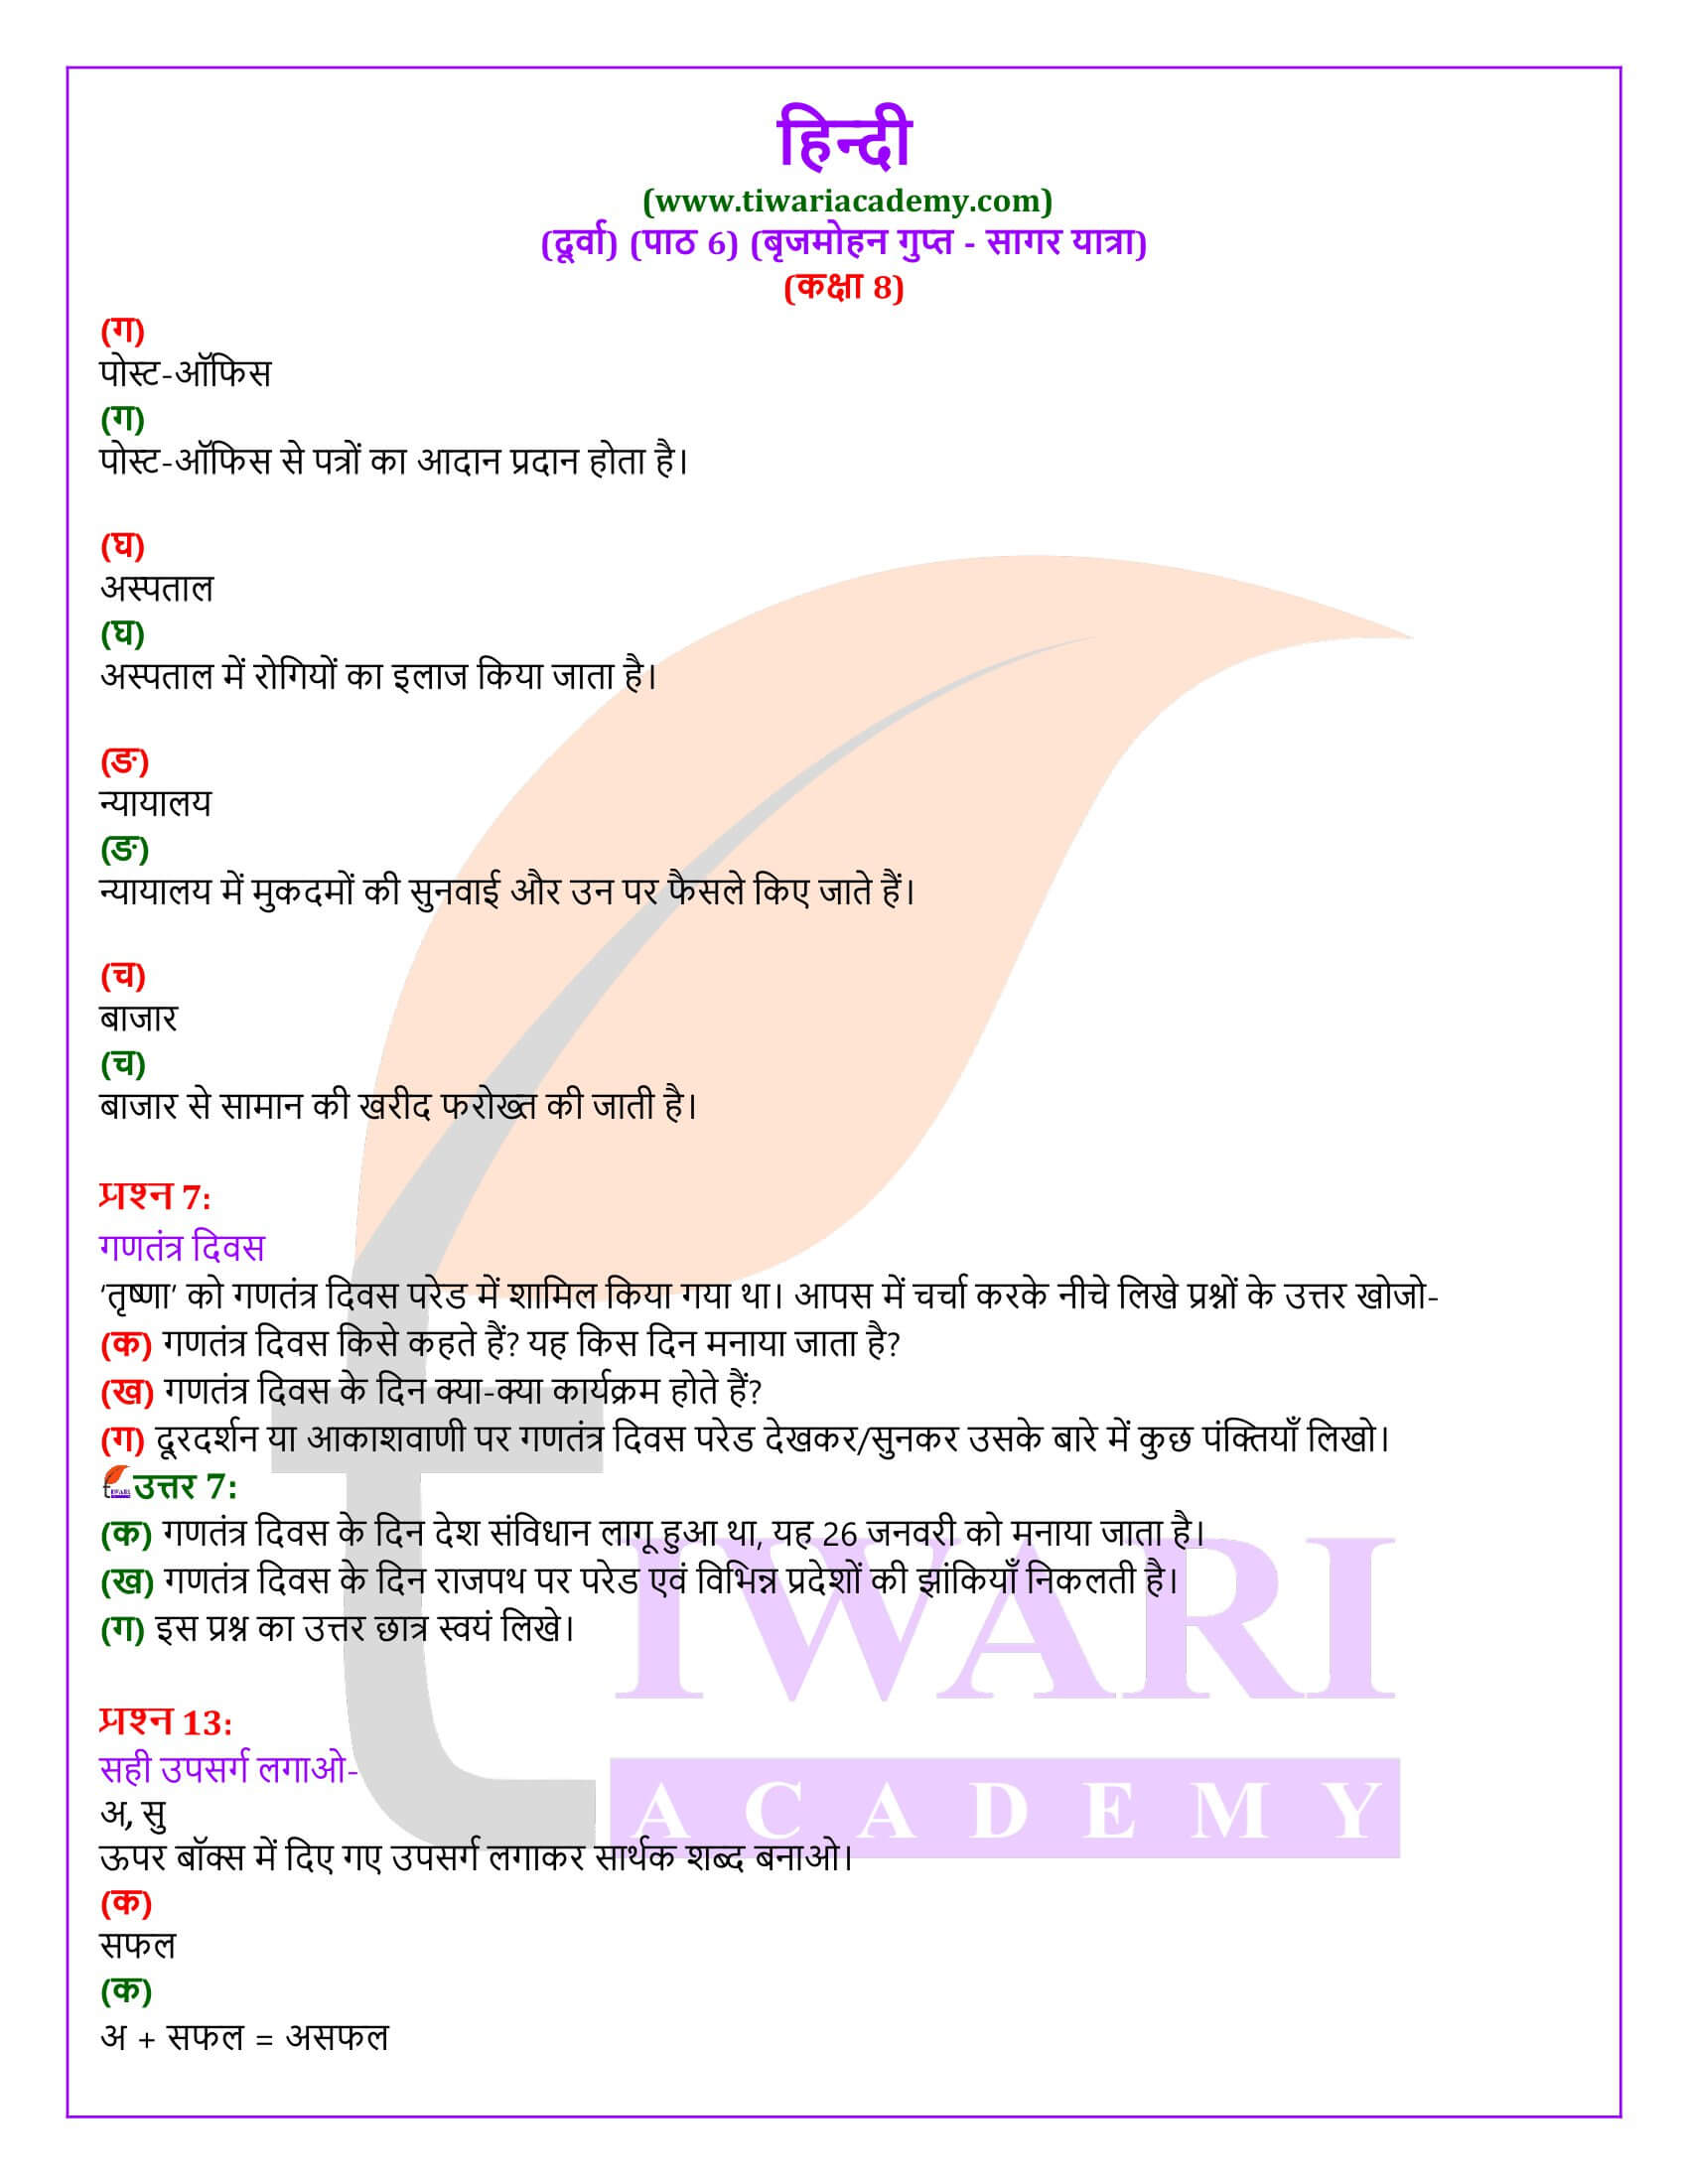 कक्षा 8 हिंदी दूर्वा अध्याय 6 के प्रश्न उत्तर